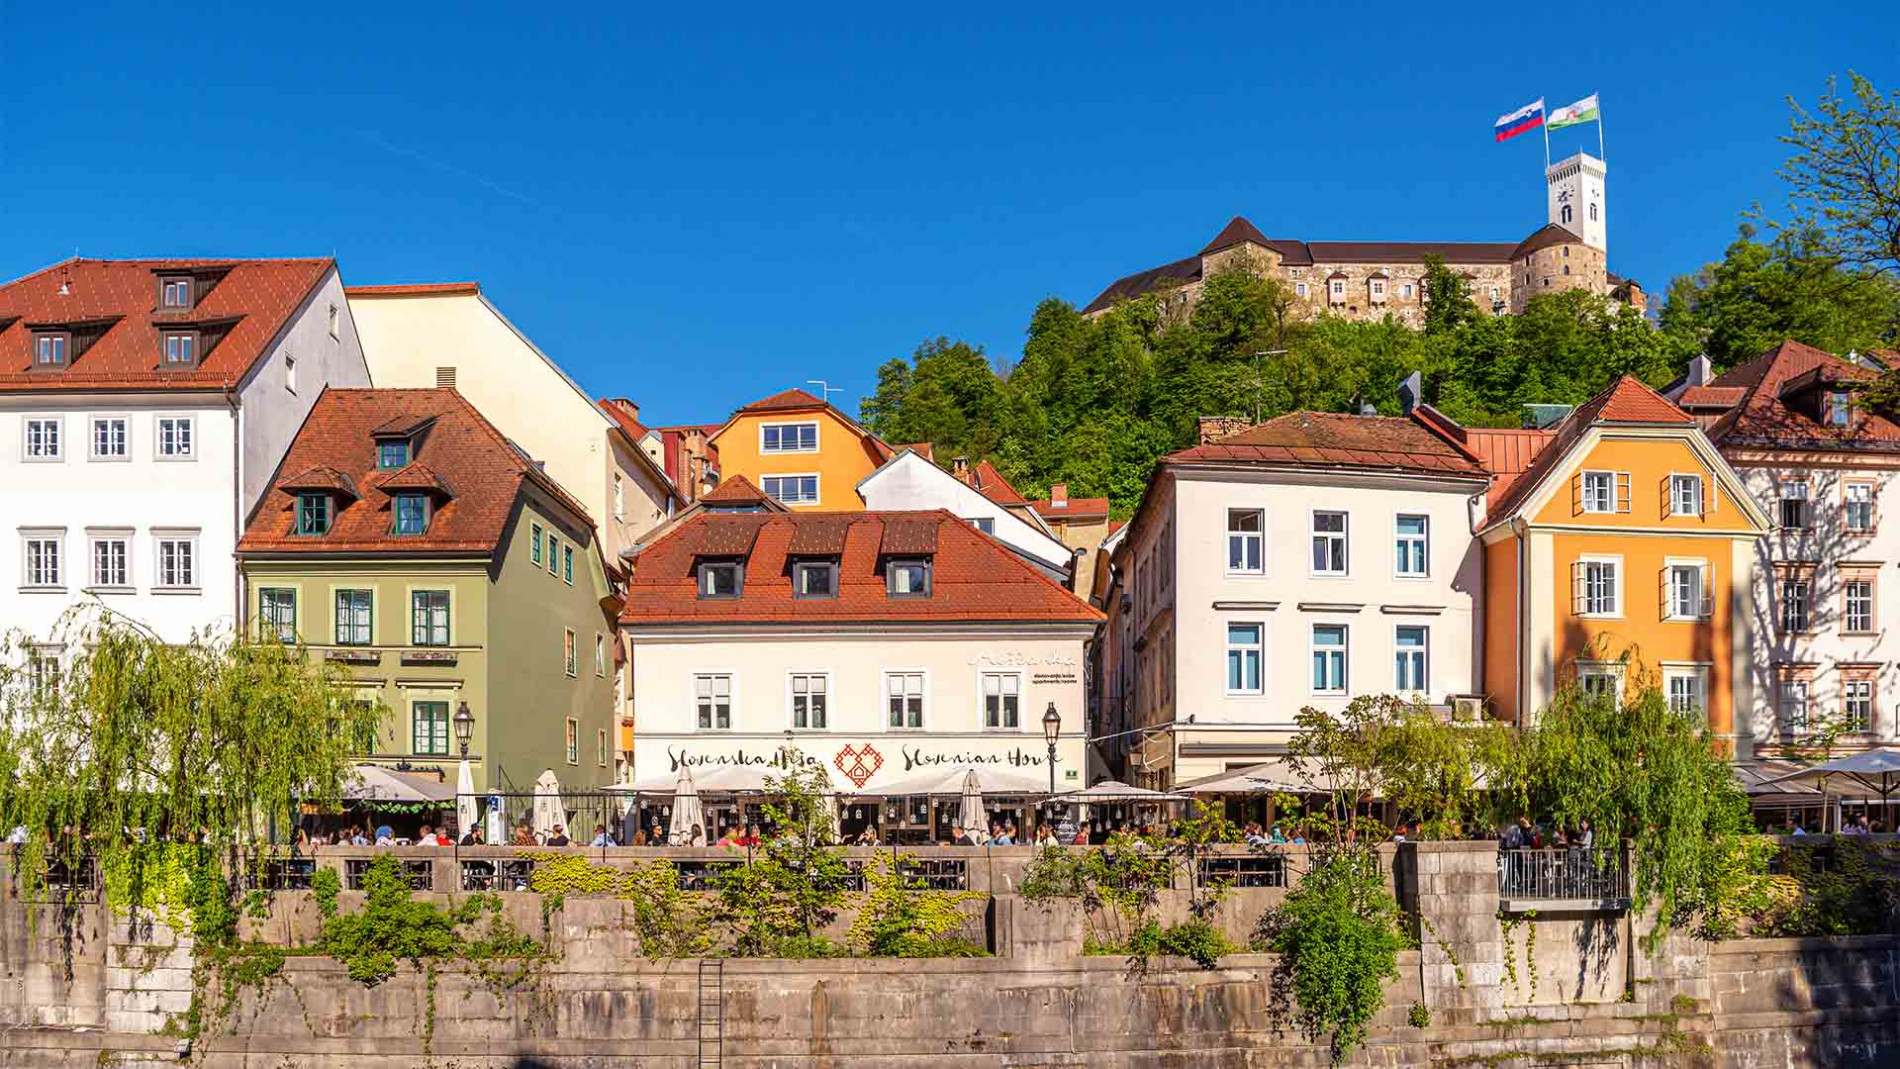 Ljubljanski grad nabrezja 2019 Andrej Tarfila STO2